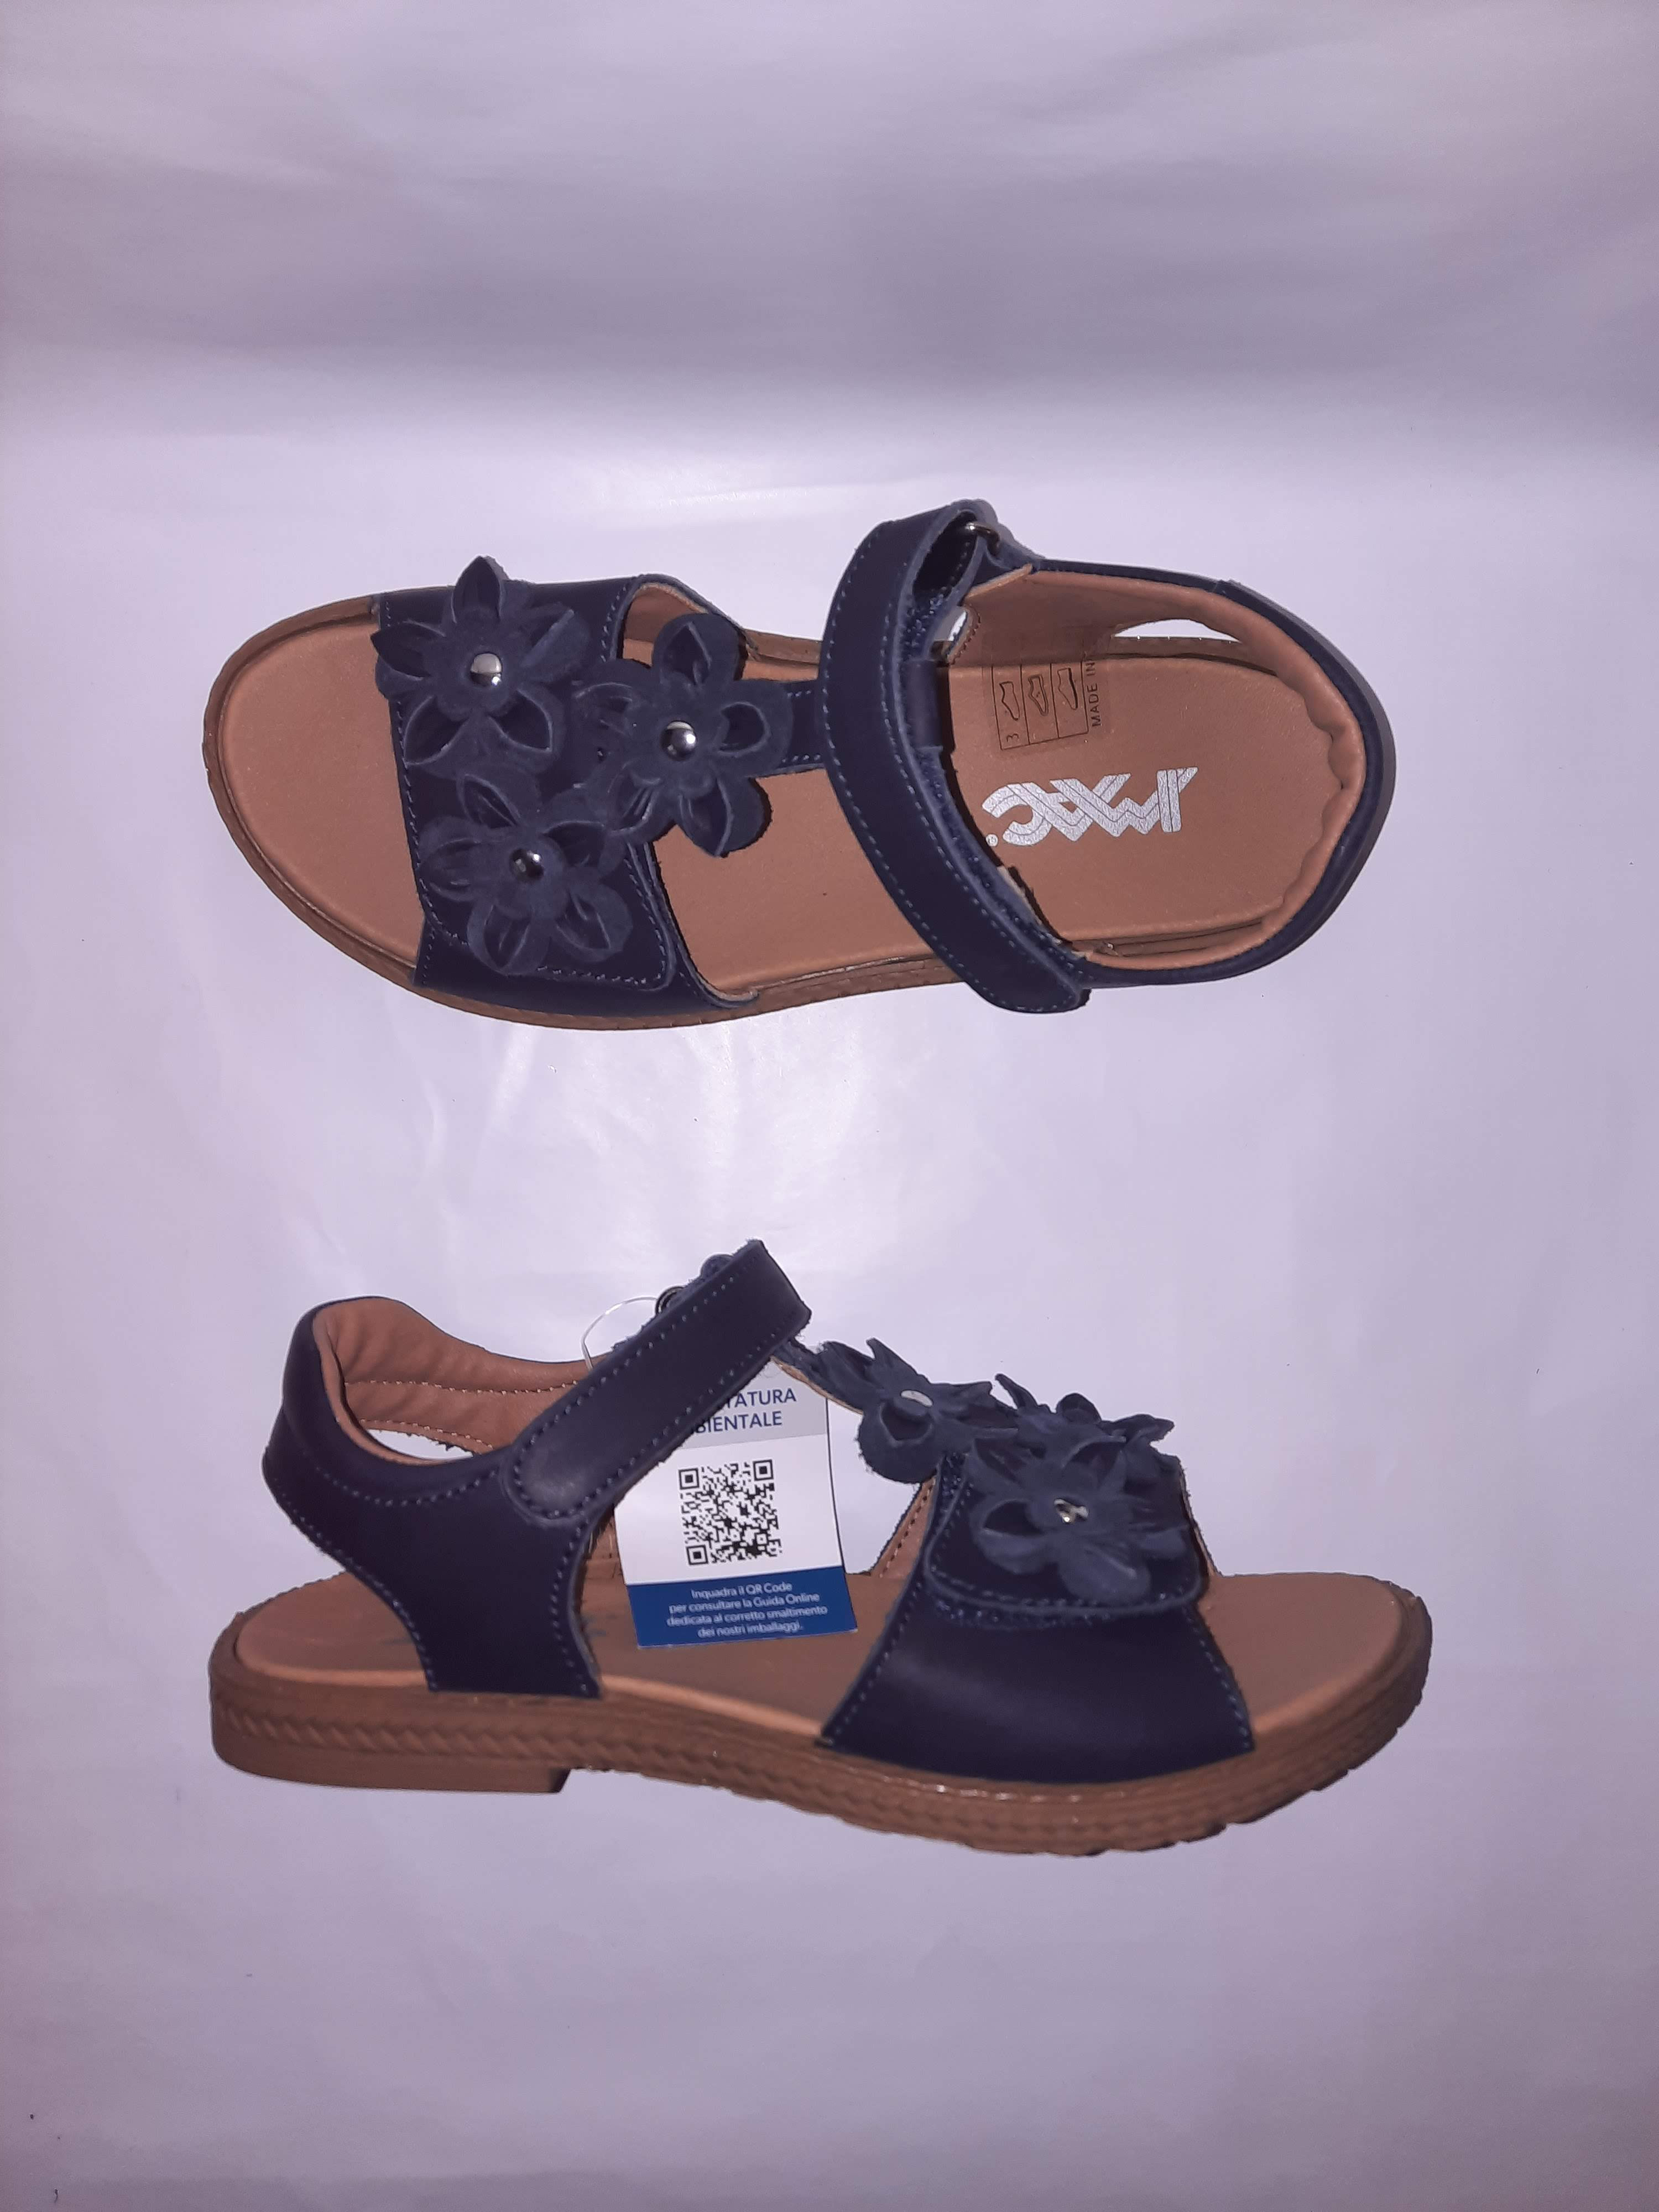 IMAC letní sandálky Amelia blue/black 377424 Velikost: 35